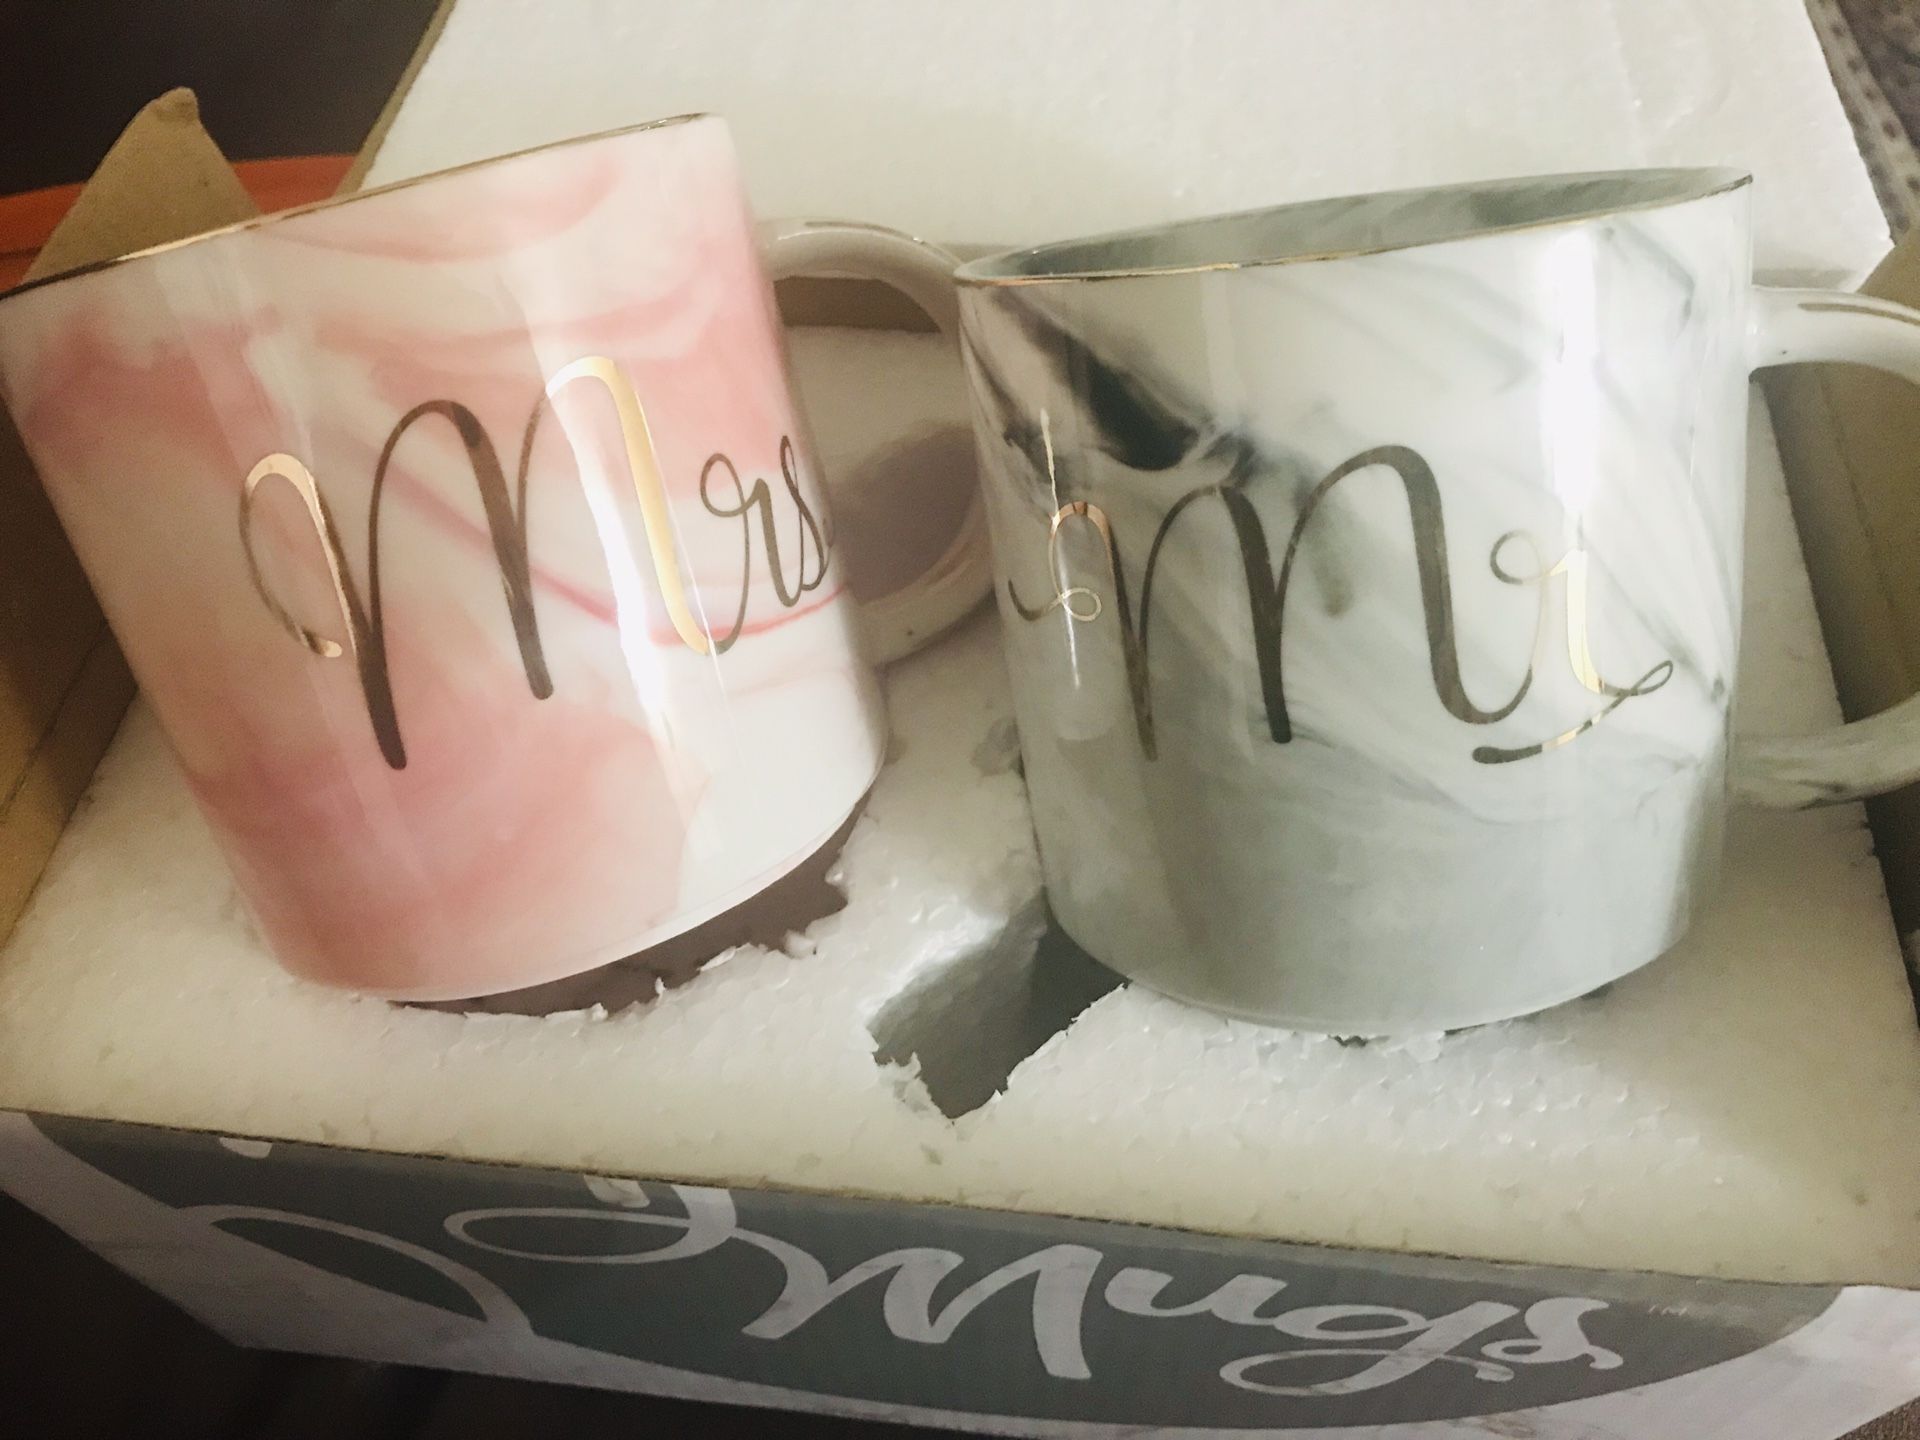 Mr & mrs mug - 2$